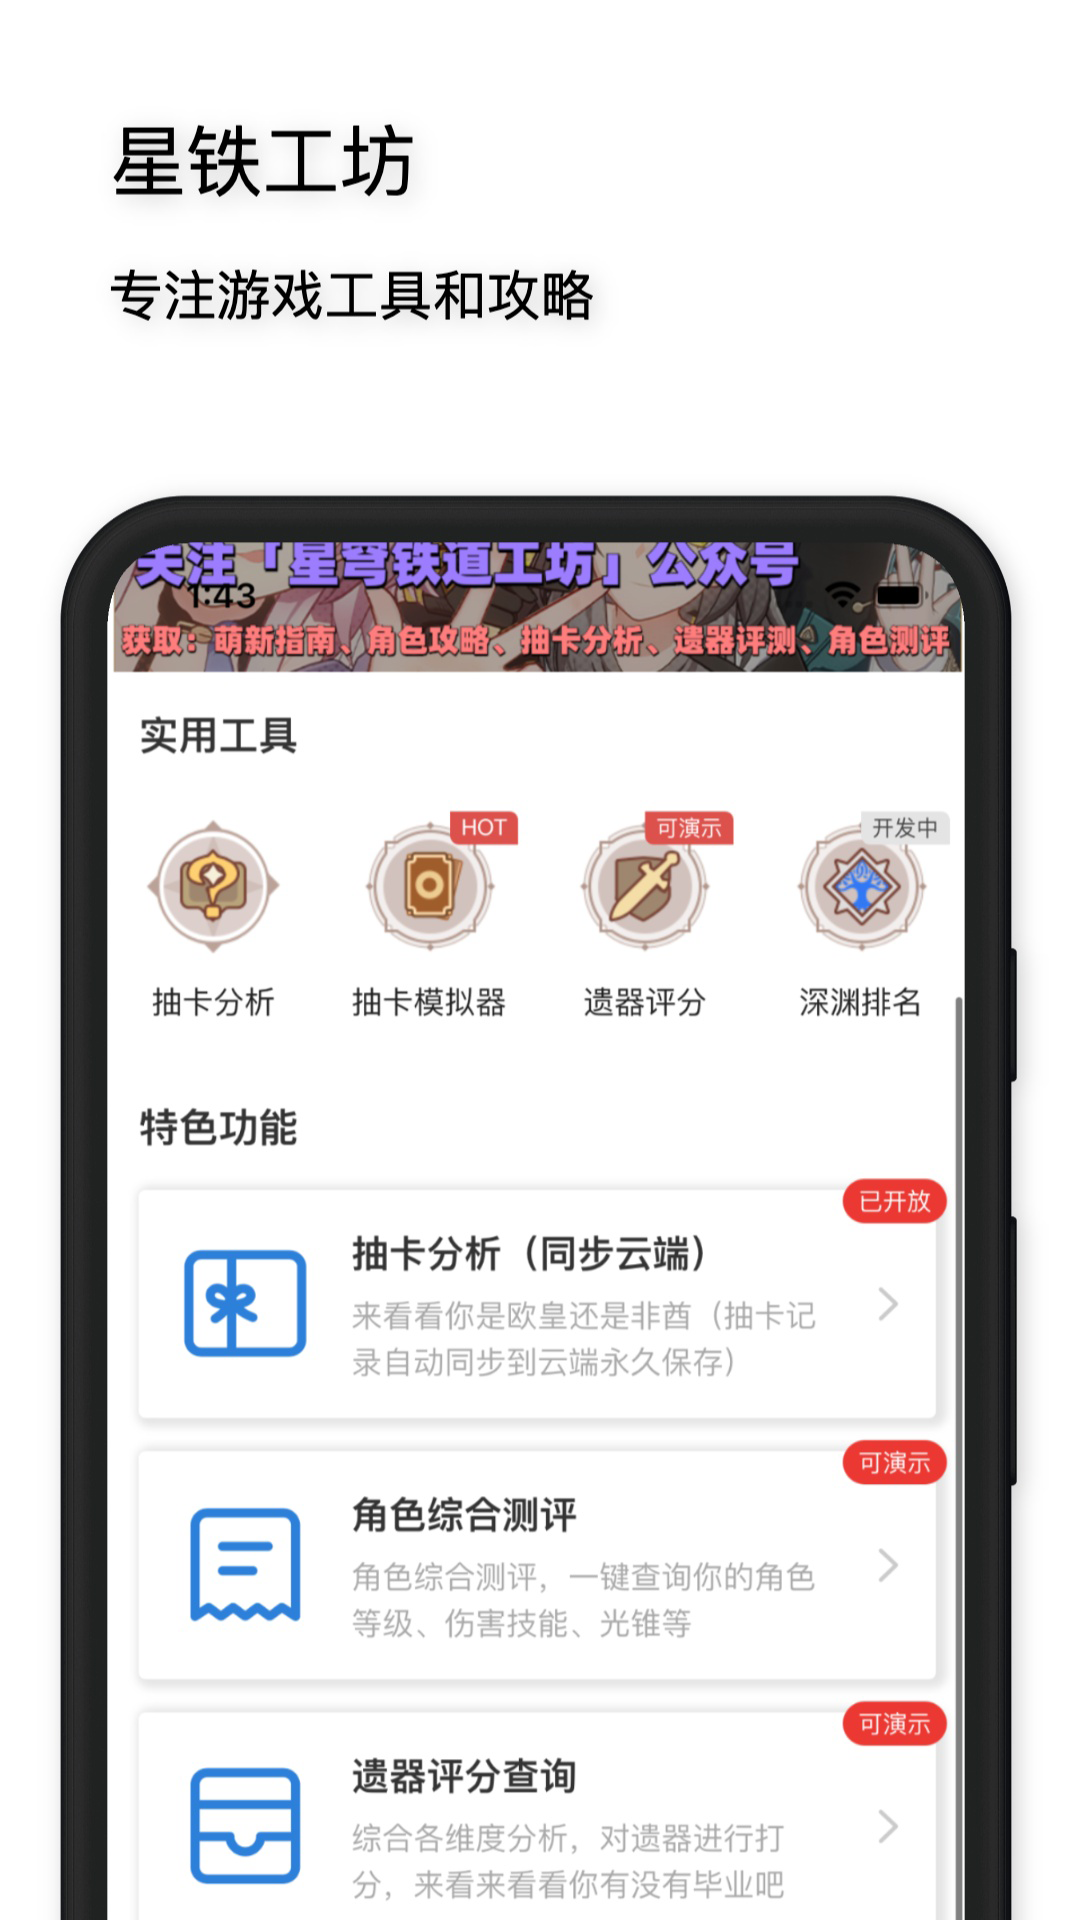 星穹铁道工坊福州开发手机app费用